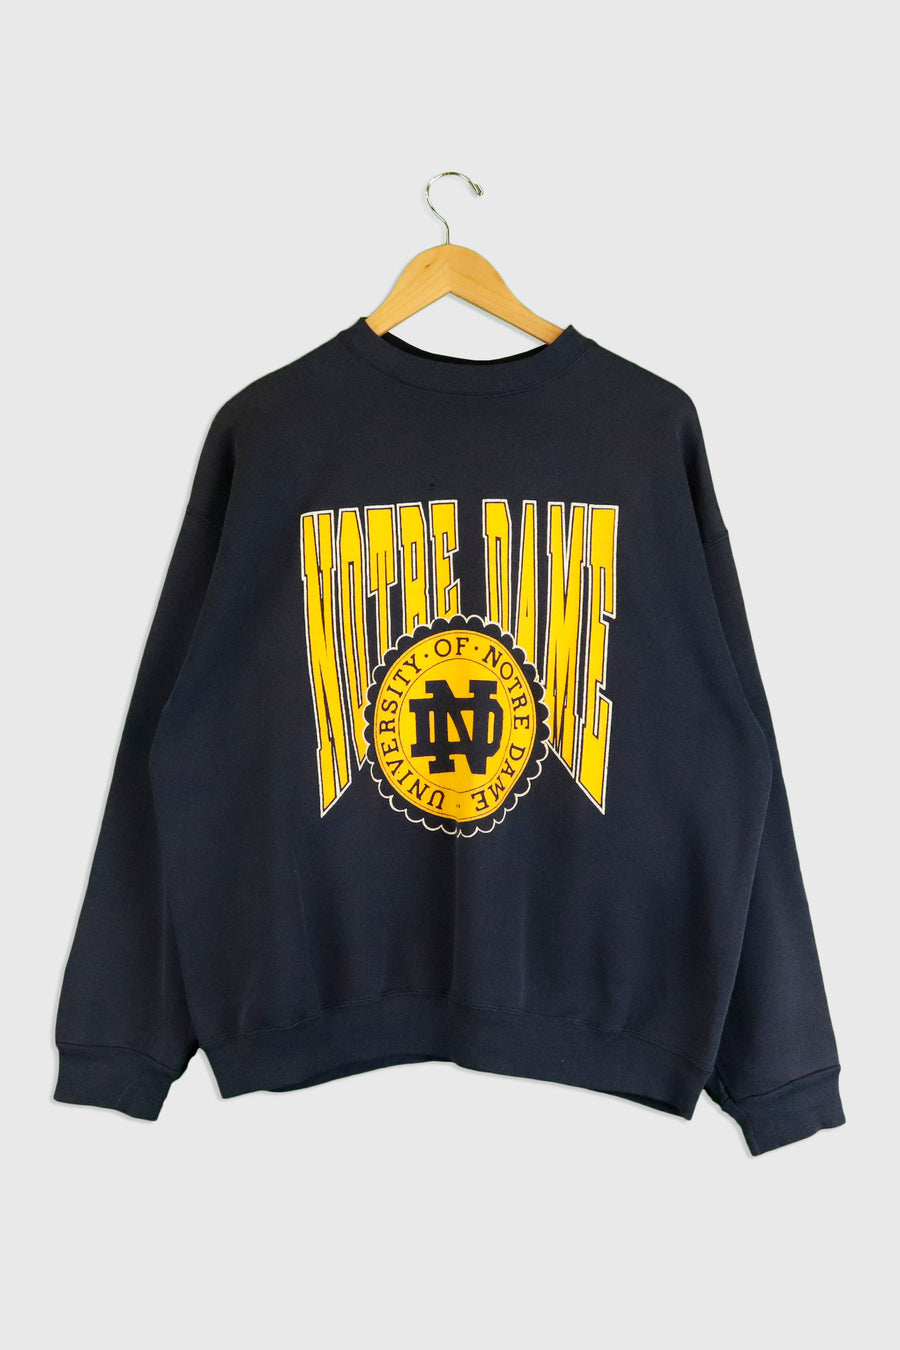 Vintage Notre Dame University Vinyl Sweatshirt Sz XL